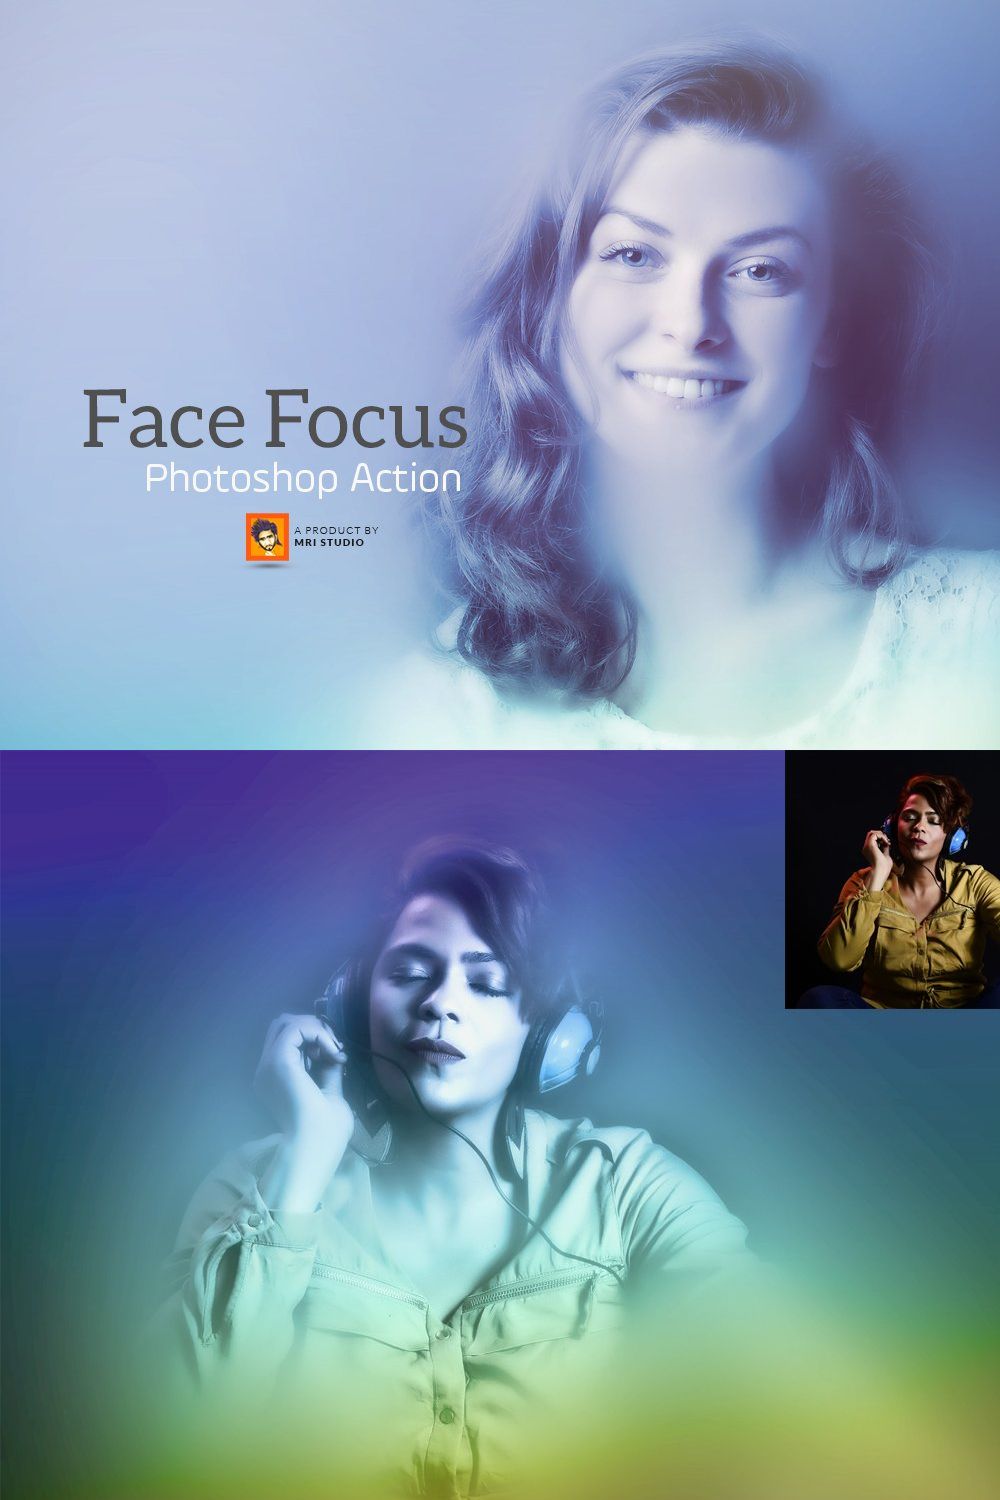 Face Focus Photoshop Action pinterest preview image.